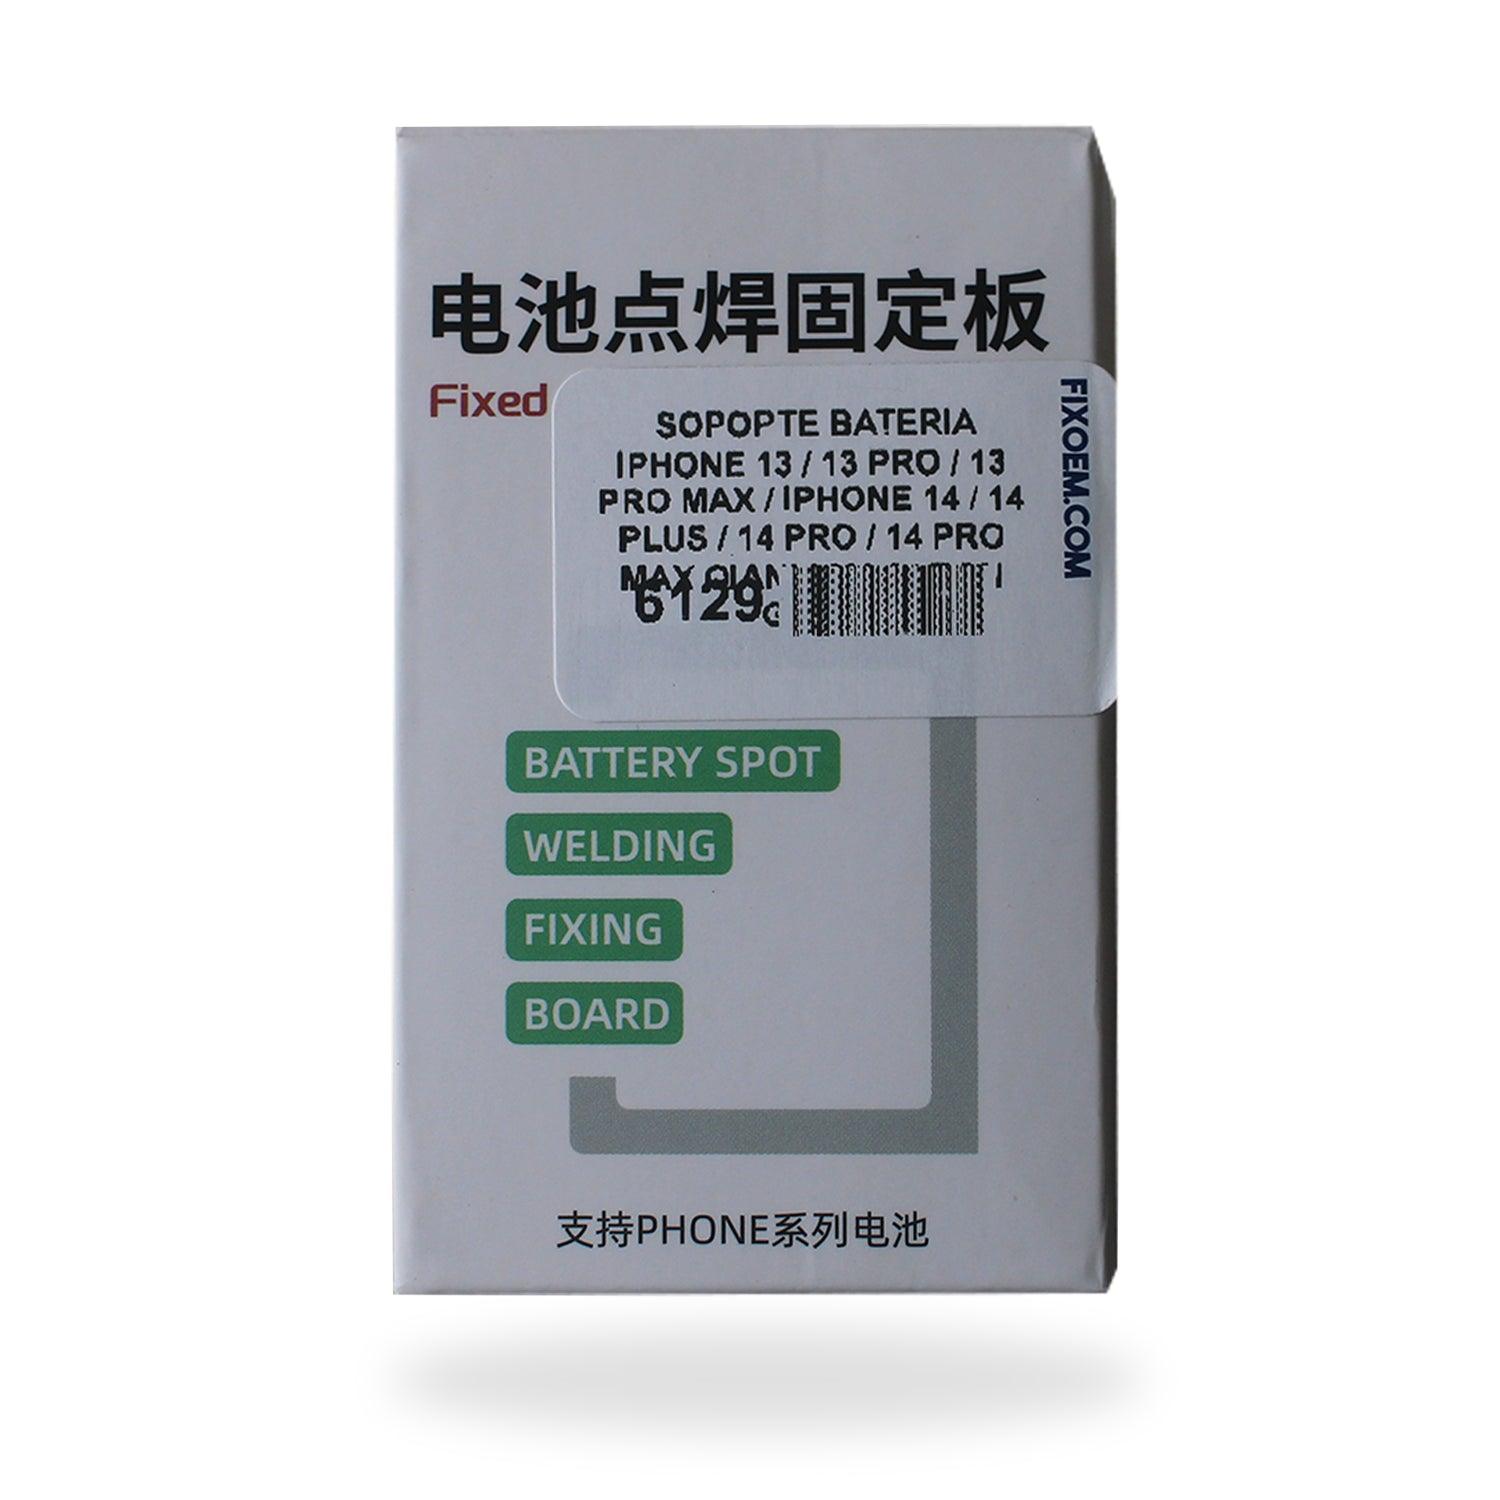 Soporte Bateria Qianli Macaron Gen 2 Iphone 13 - 14 Pro Max |+2,000 reseñas 4.8/5 ⭐